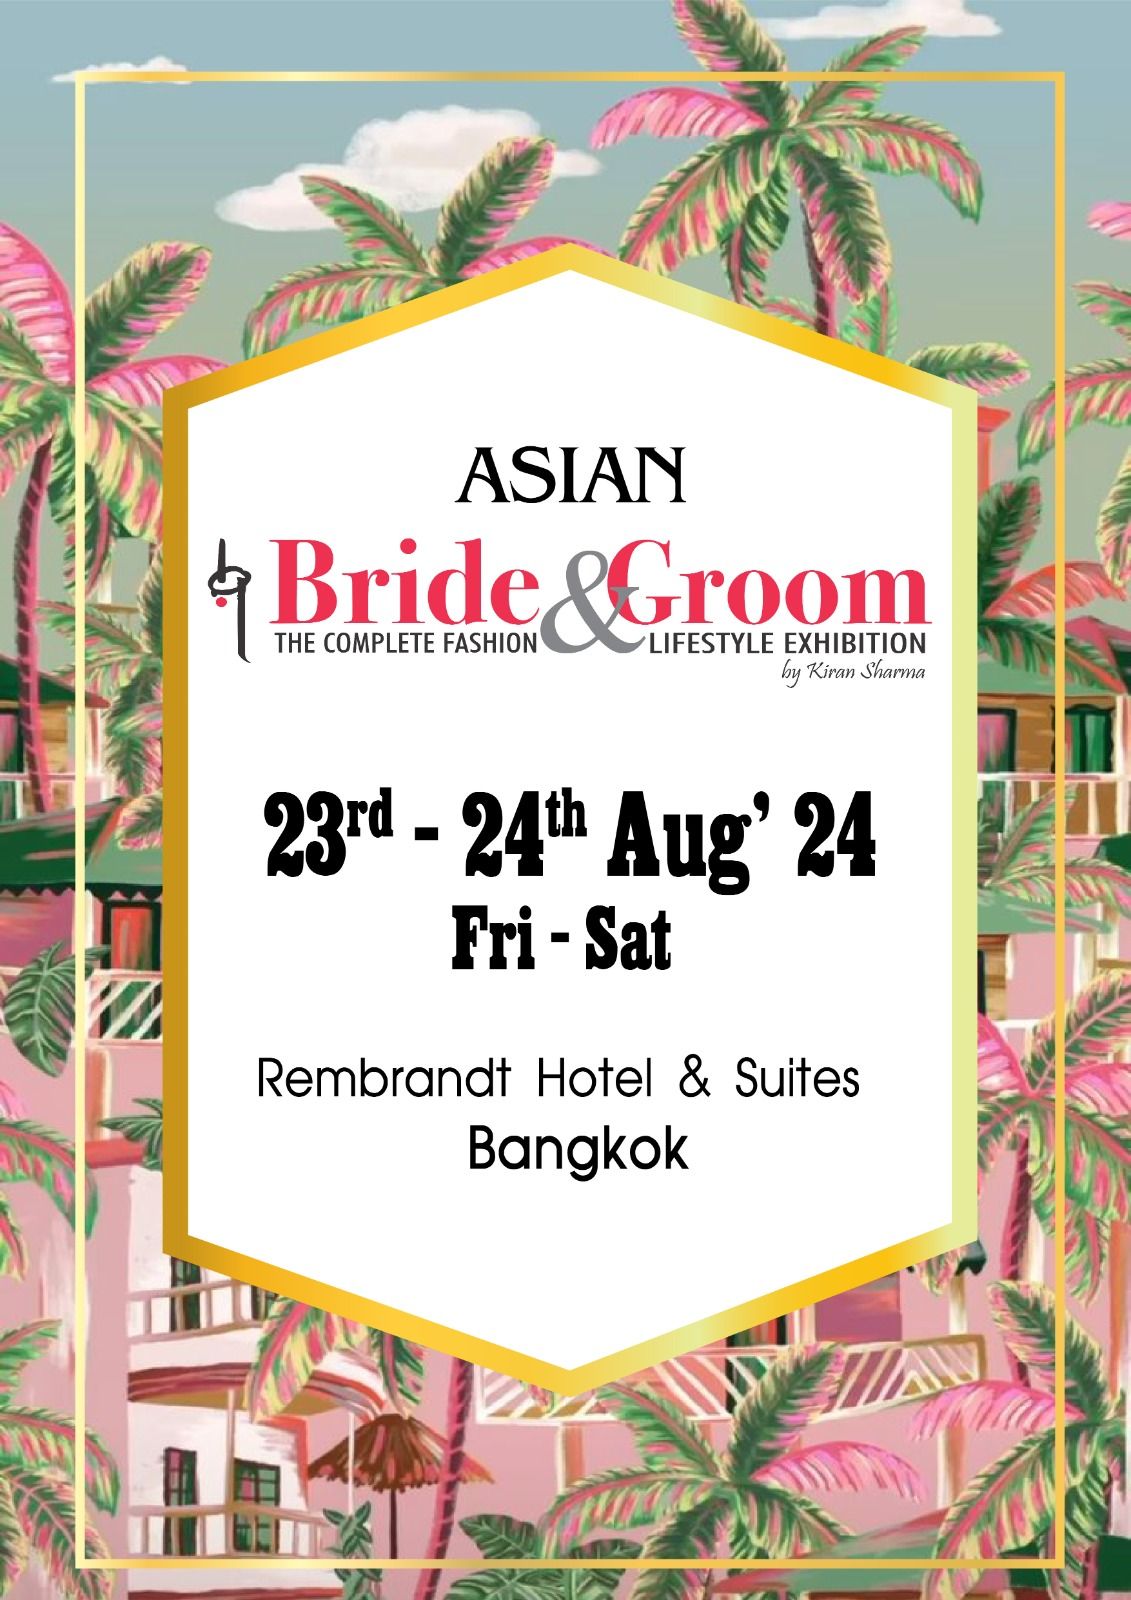 Asian Bride & Groom Exhibition 